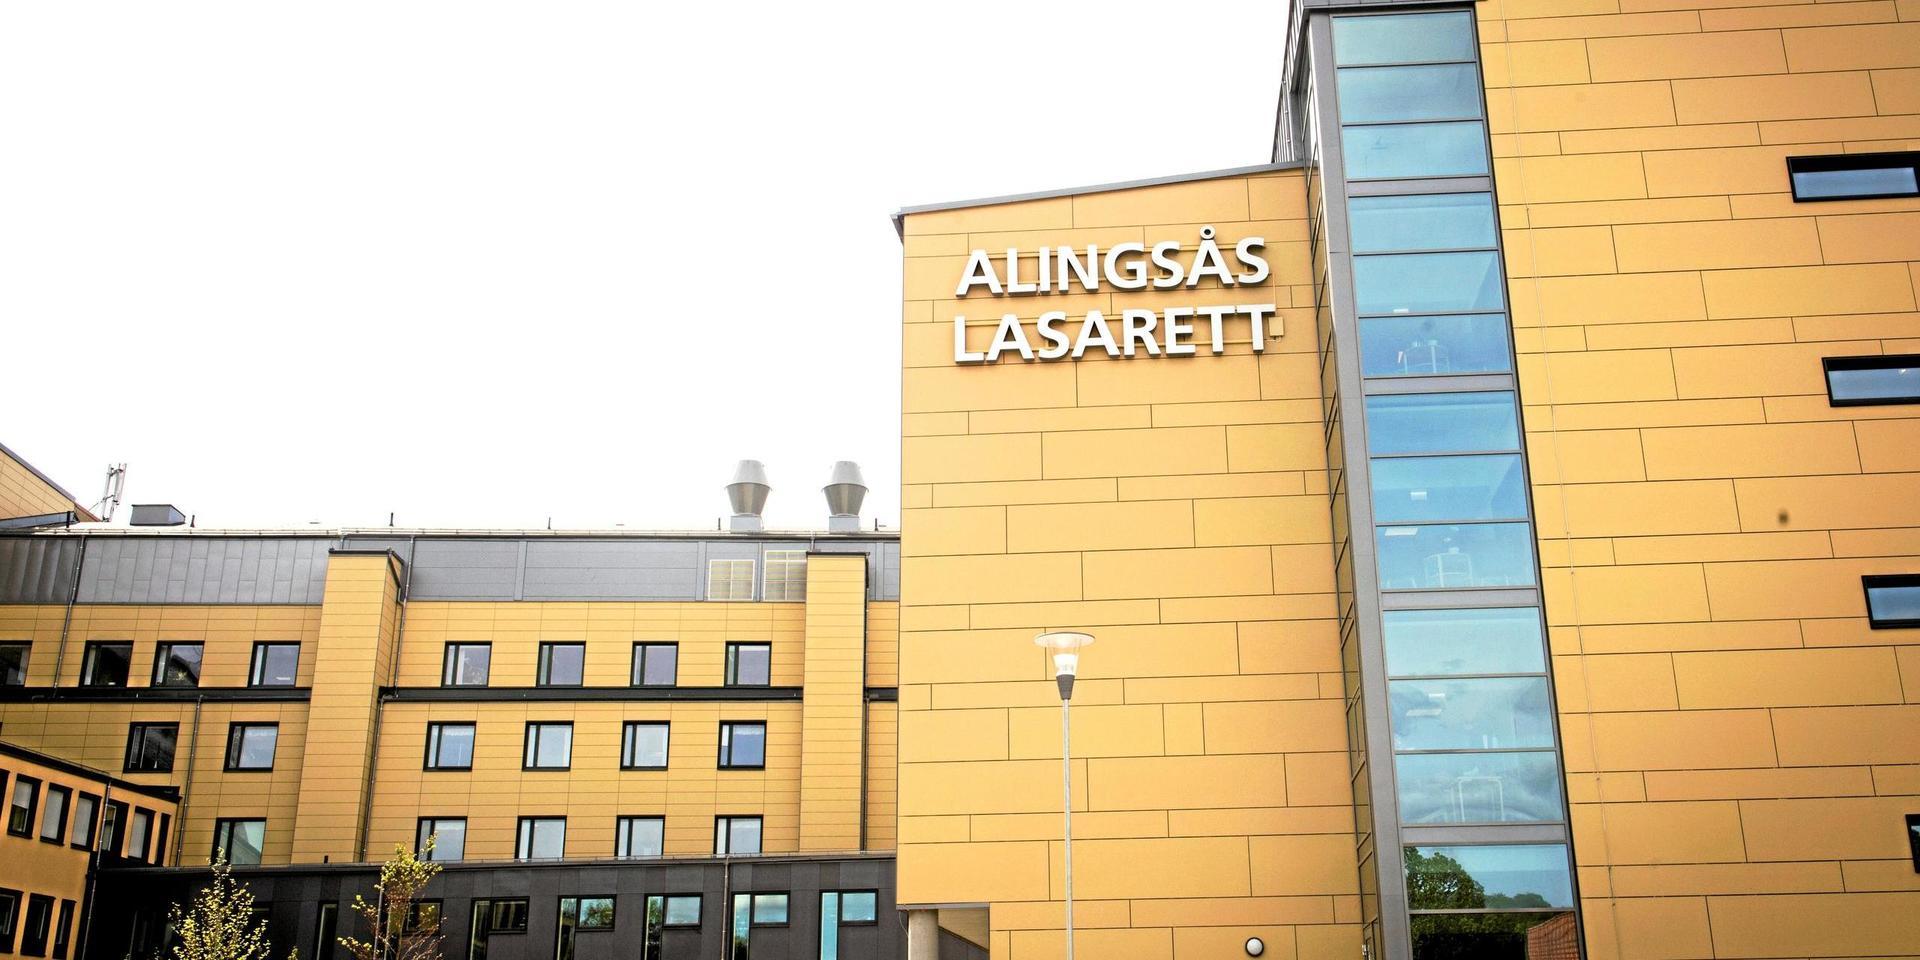 Personal på Alingsås lasarett samt regionen fick ingen julklapp eller extra bonus.